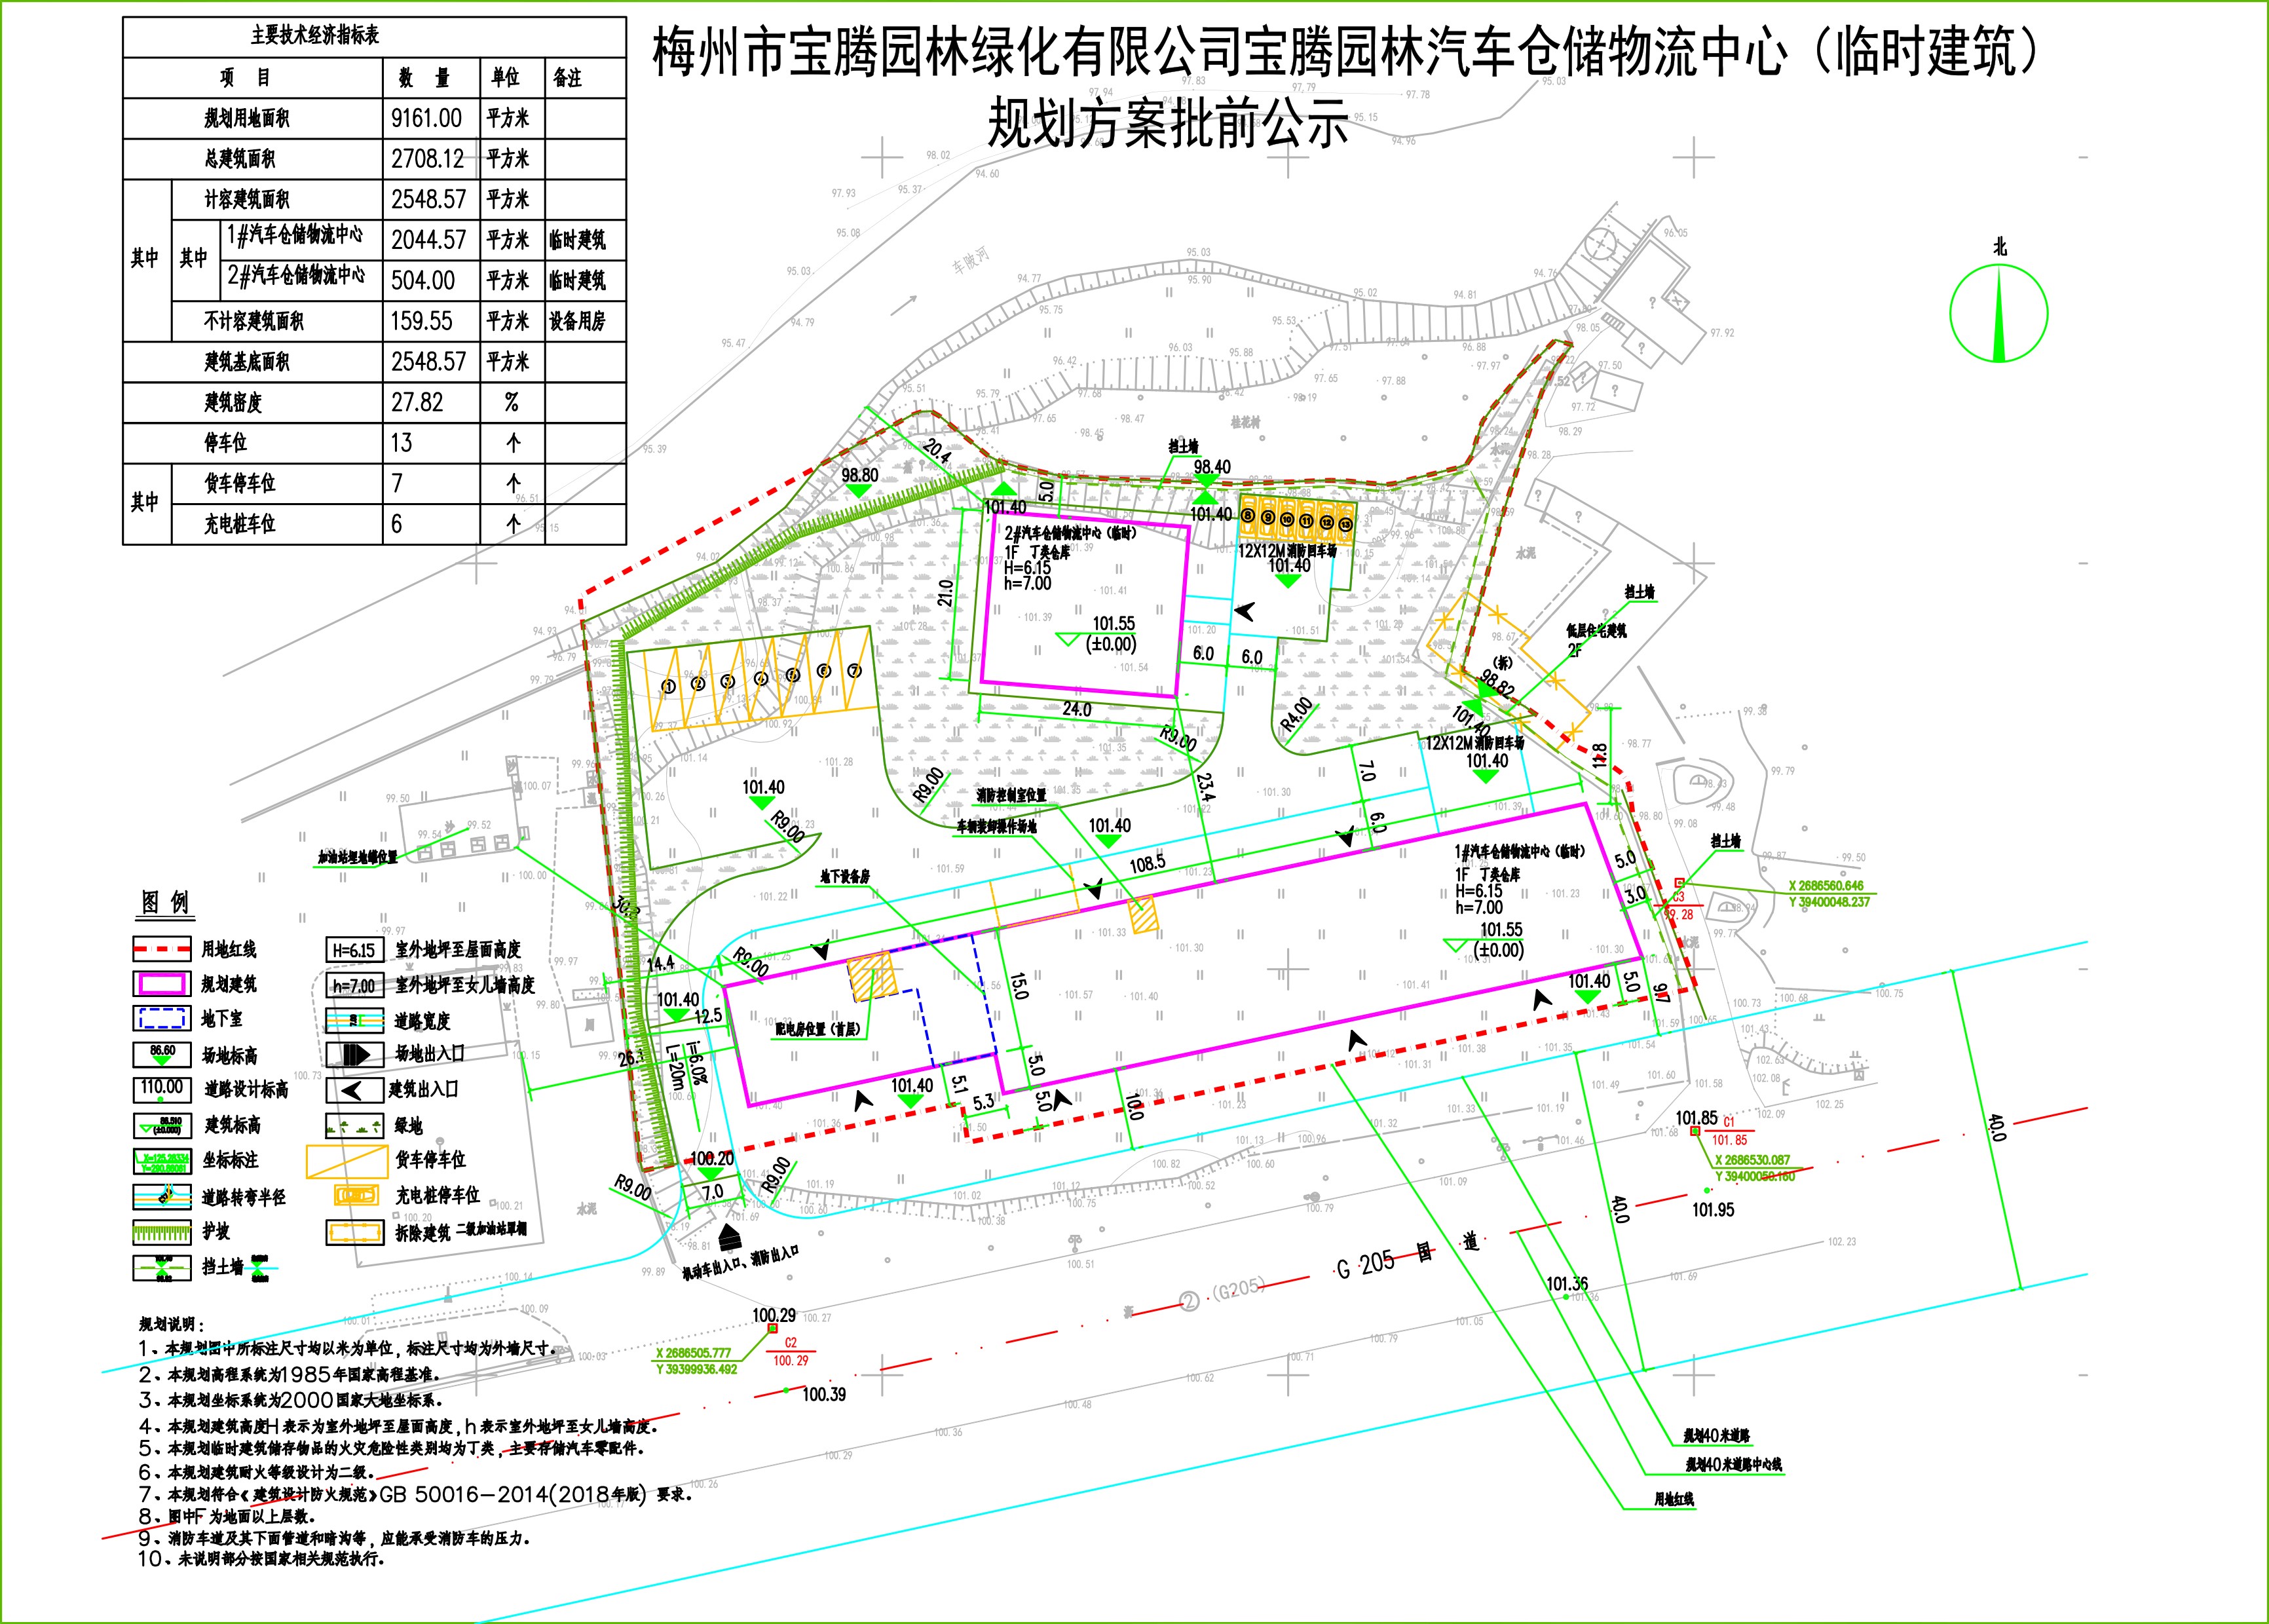 宝腾园林绿化规划图20210116公示图_t9_t3.jpg